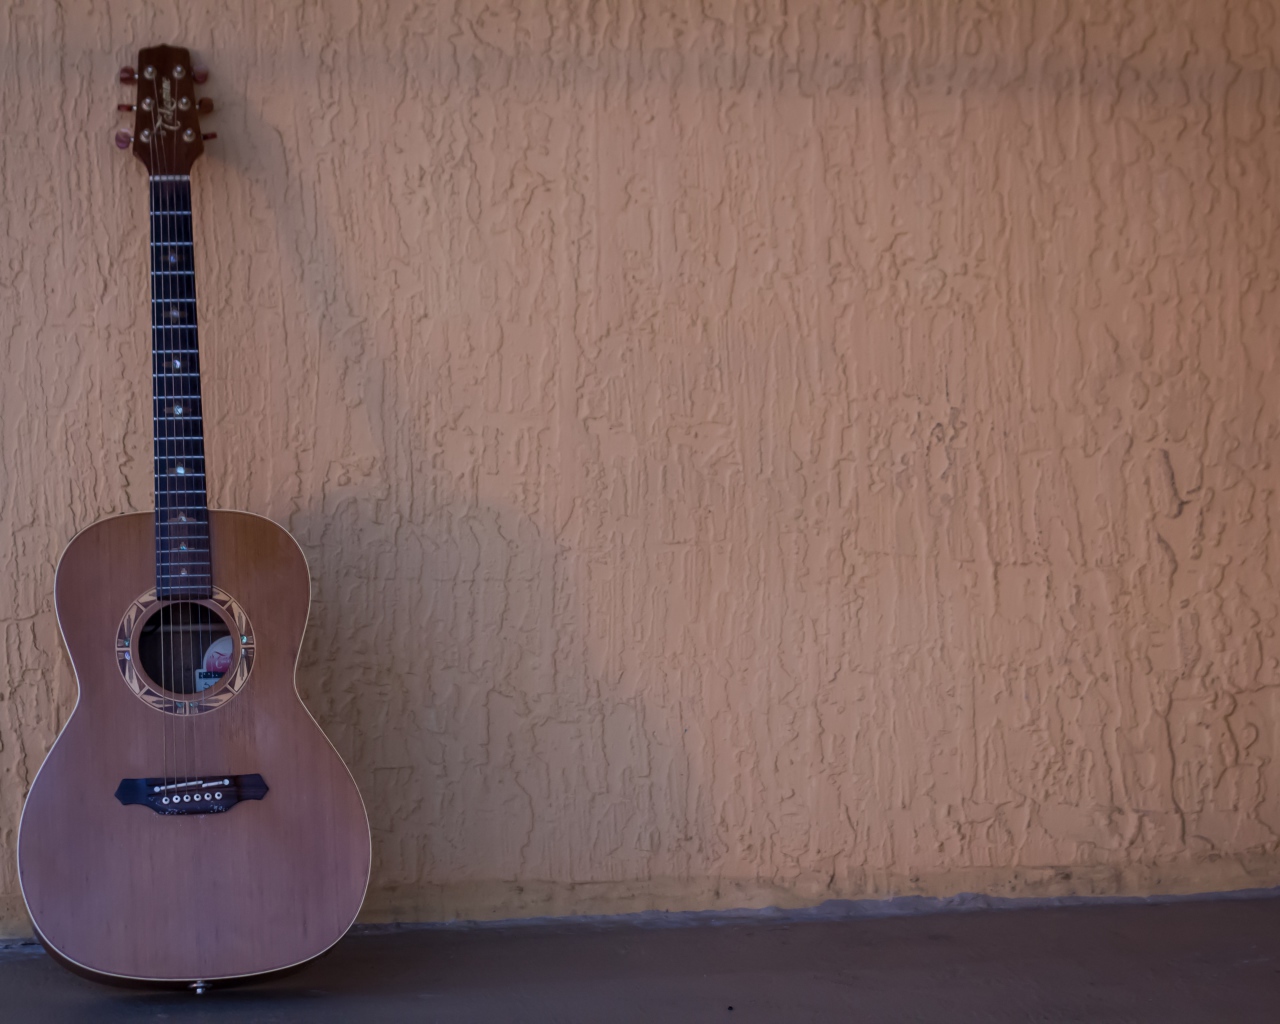 Шестиструнная гитара стоит у стены